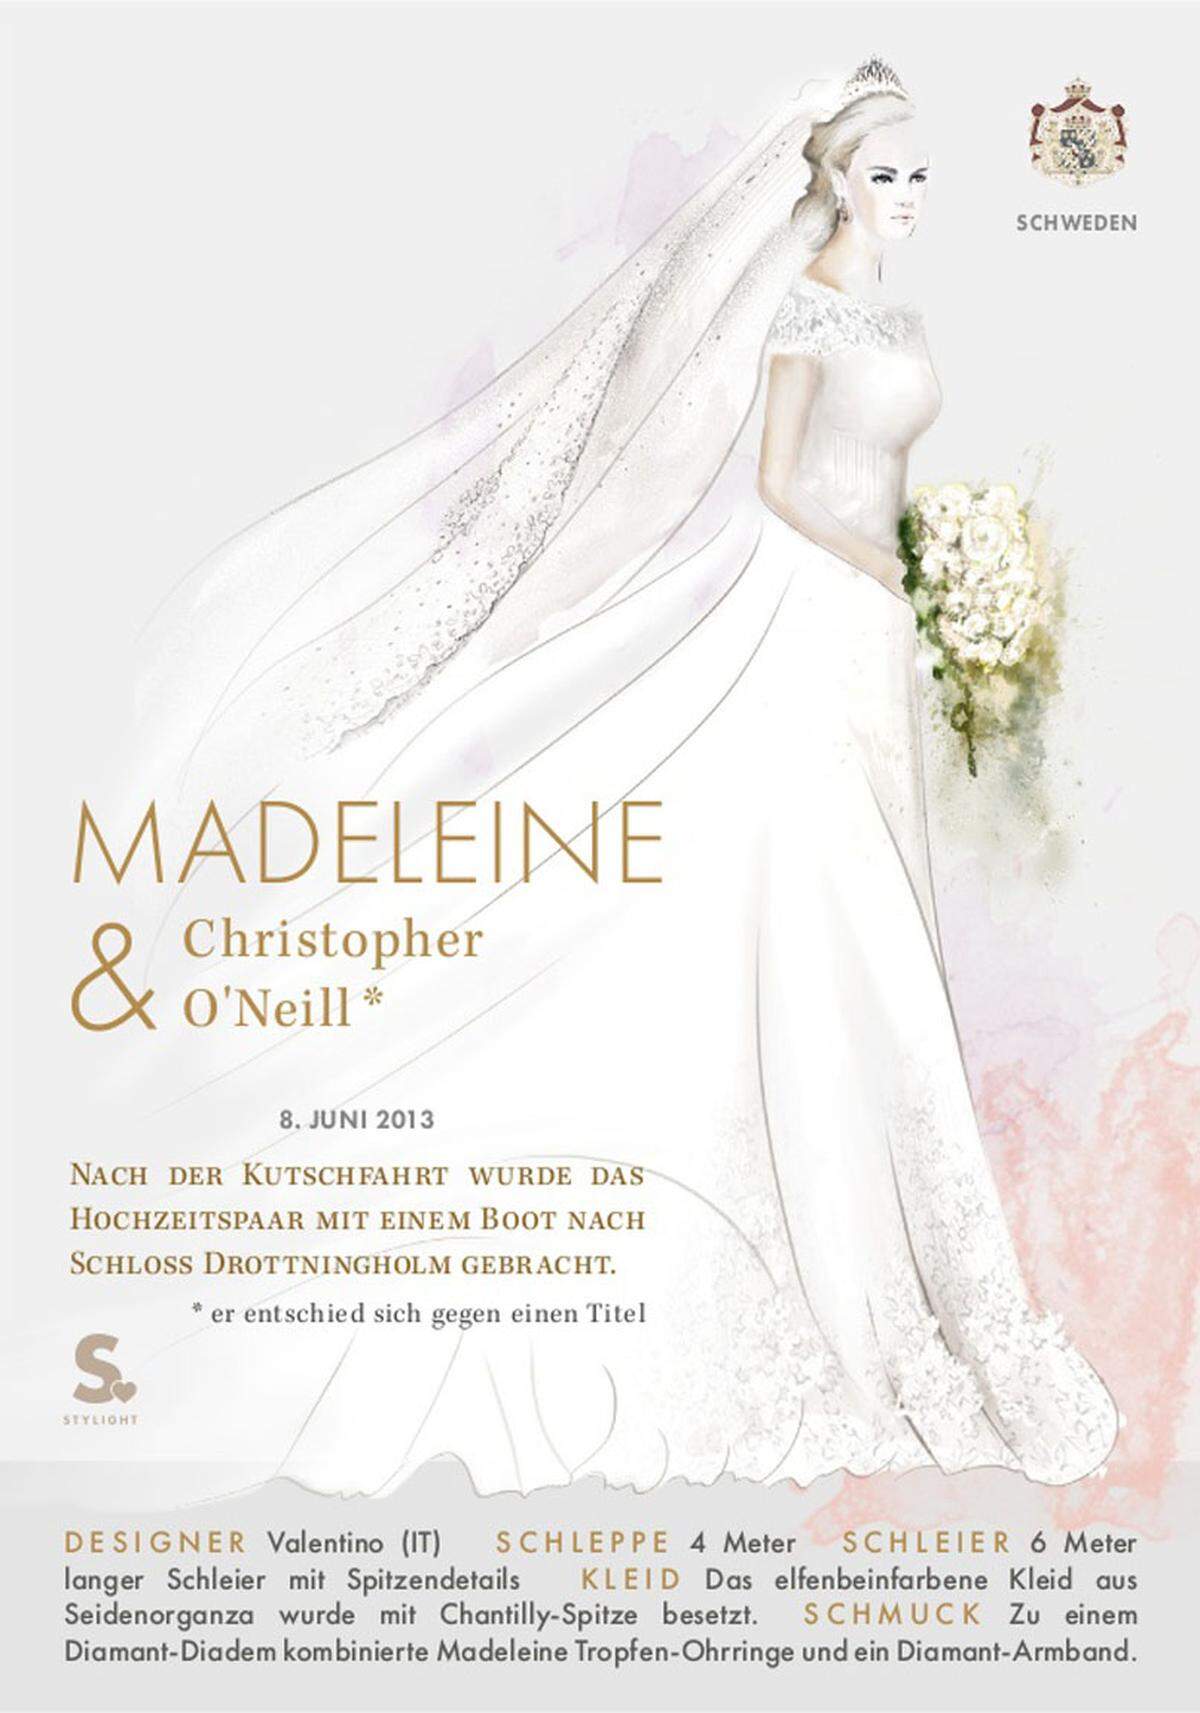 Madeleine von Schweden setzte auf italienisches Design von Valentino. Sechs Meter lang war der Schleier der Braut, vier Meter lang die Schleppe.